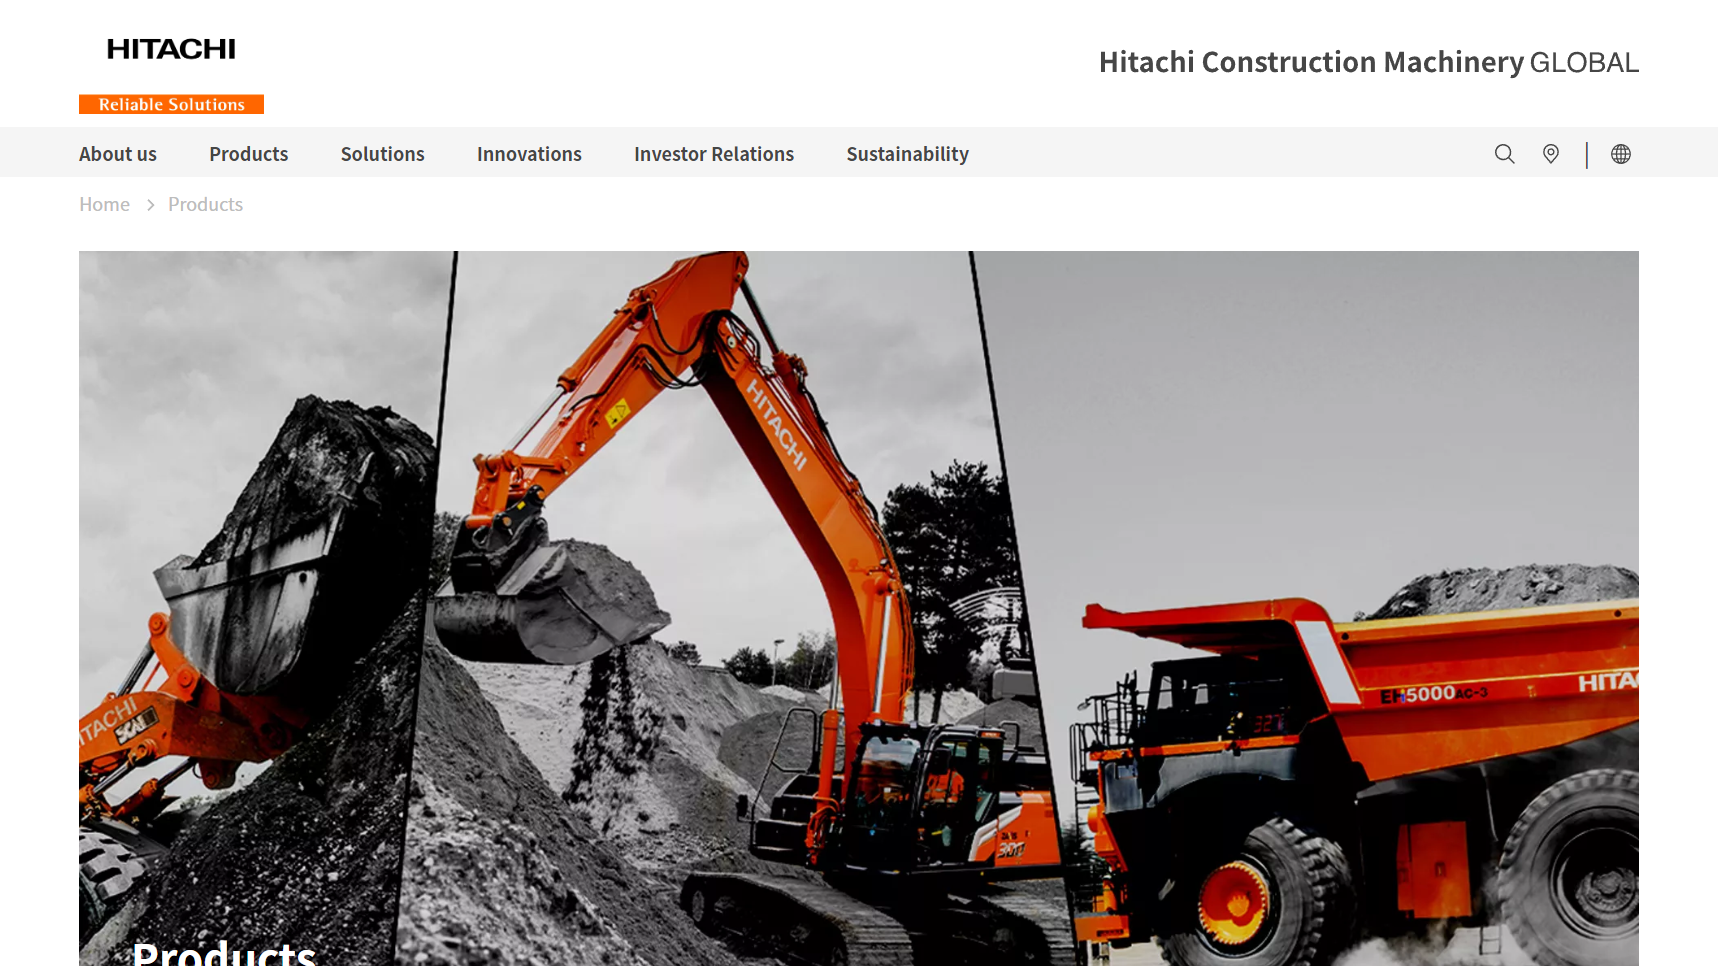 Hitachi Construction Machinery - Earthmoving Equipment Manufacturer